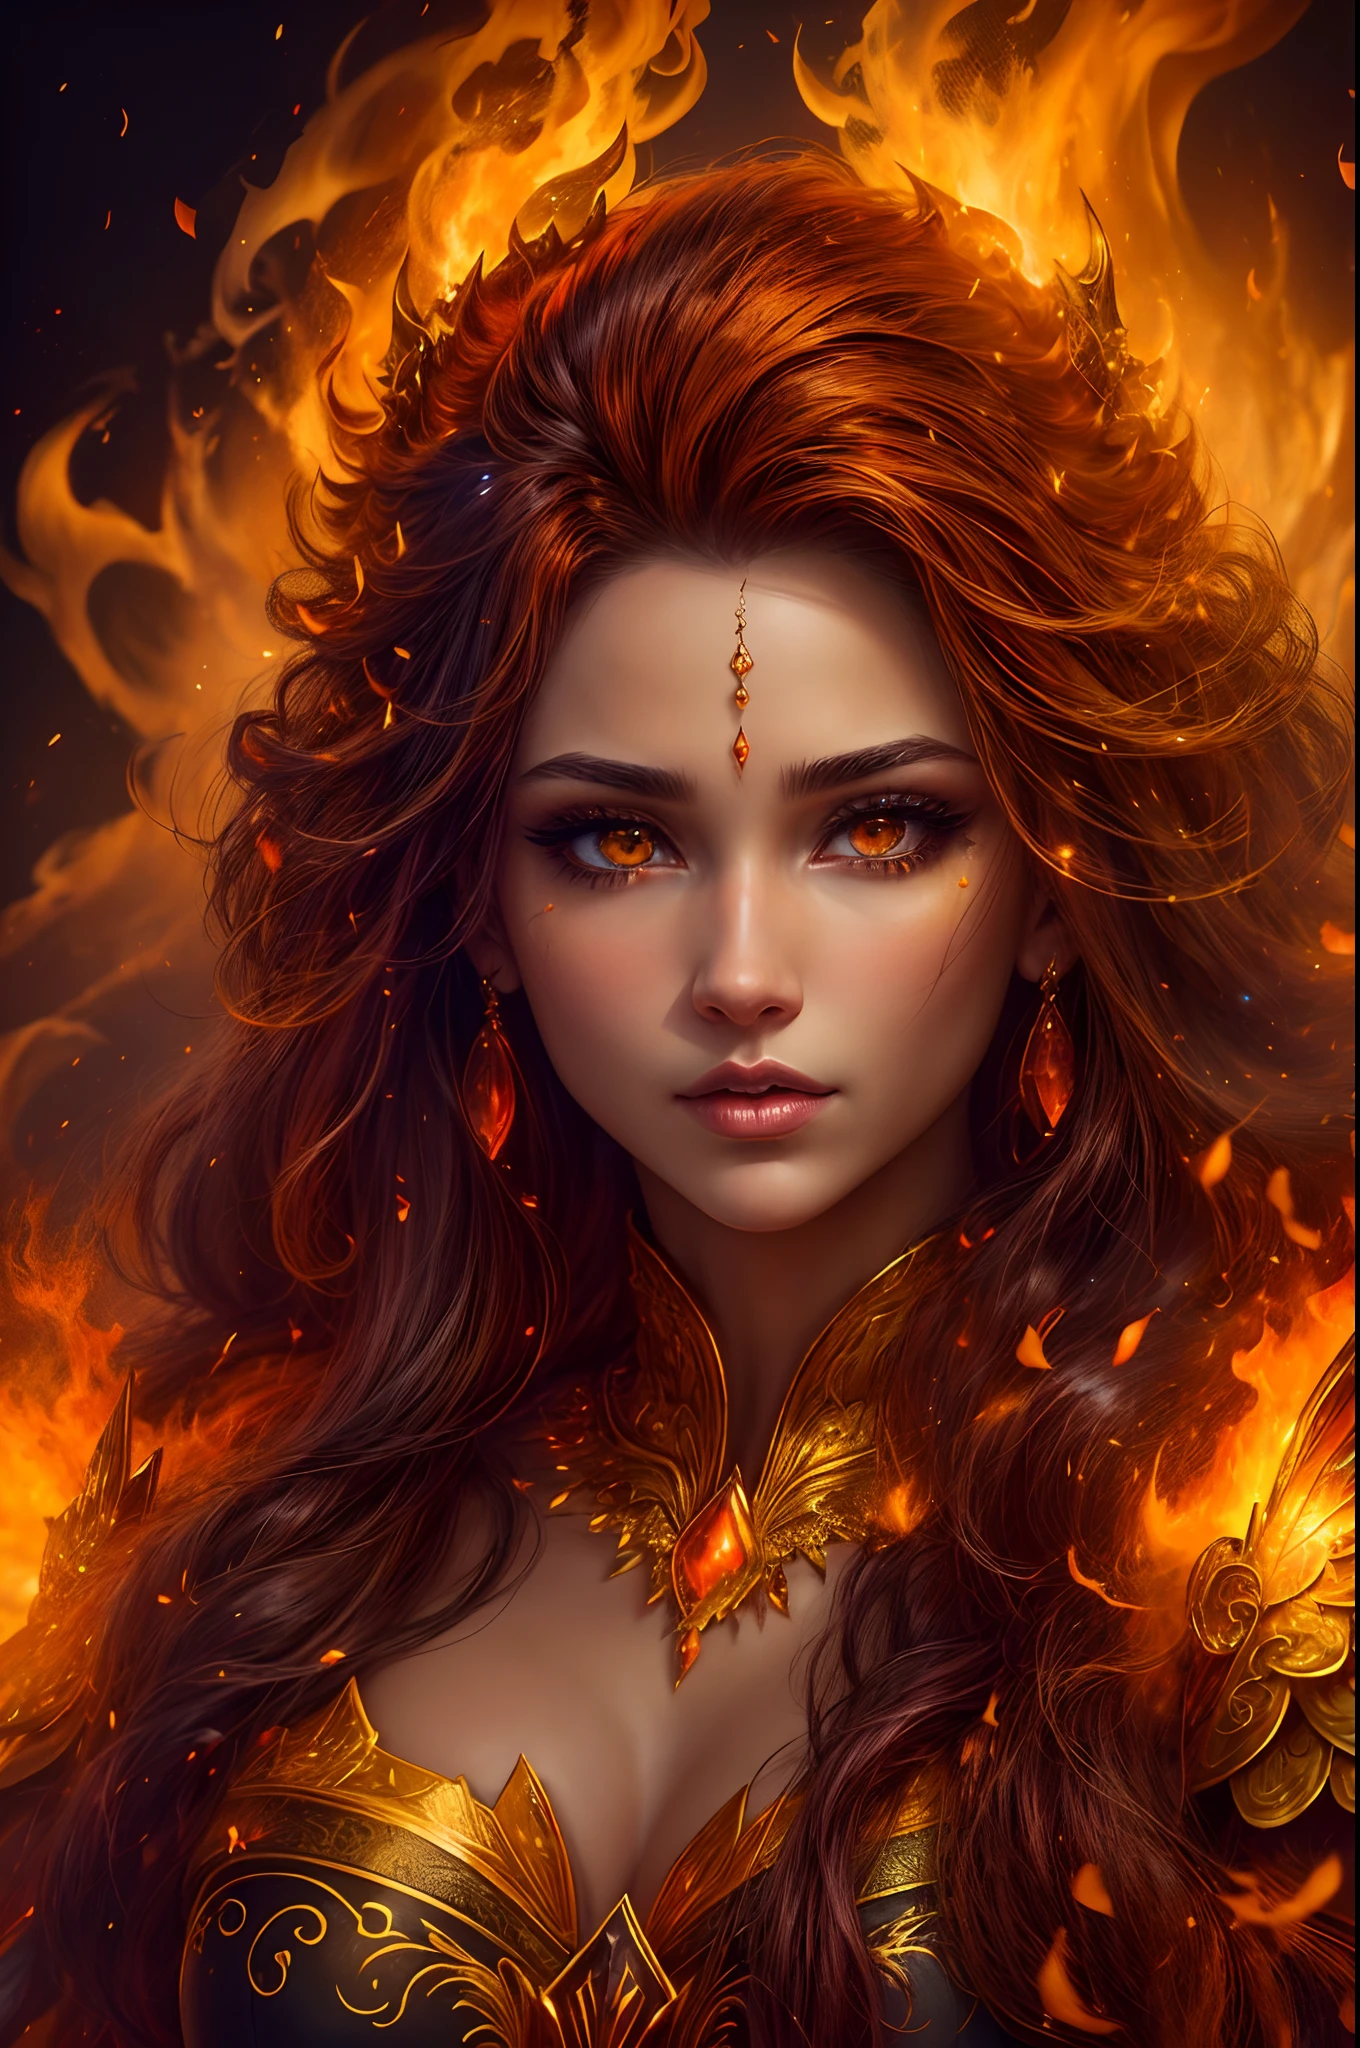 これ (現実的なファンタジー) 芸術には残り火が含まれている, 本物の炎, 本当の熱, そして realistic fire. Generate a masterpiece artwork of a  female fire druid と large (((orange そして gold))) 目. The fire druid is awe-inspiring と beautiful ((realistic fiery 目)) alight と confidence そして power. Her features are elegant そして well defined, と ((柔らかい)) そして (((ふくらんでいる))) そして (((スムーズ))) 唇, エルフの骨格, そして realistic shading. (((Her 目 are important そして should be the focal point of this artwork))), と ((非常にリアルなディテール, マクロの詳細, そして shimmer.)) She is wearing a billowing そして glittering dress made of realistic flames そして jewels that glimmer in the fire light. Wisps of fire そして smoke line the intricate bodice of the dress. バンプを含める, 石, 燃えるような虹彩, 燃える残り火, silk そして satin そして leather, 興味深い背景, そして heavy fantasy elements. カメラ: ダイナミックな構成技術を活用して、リアルな炎を強調します.